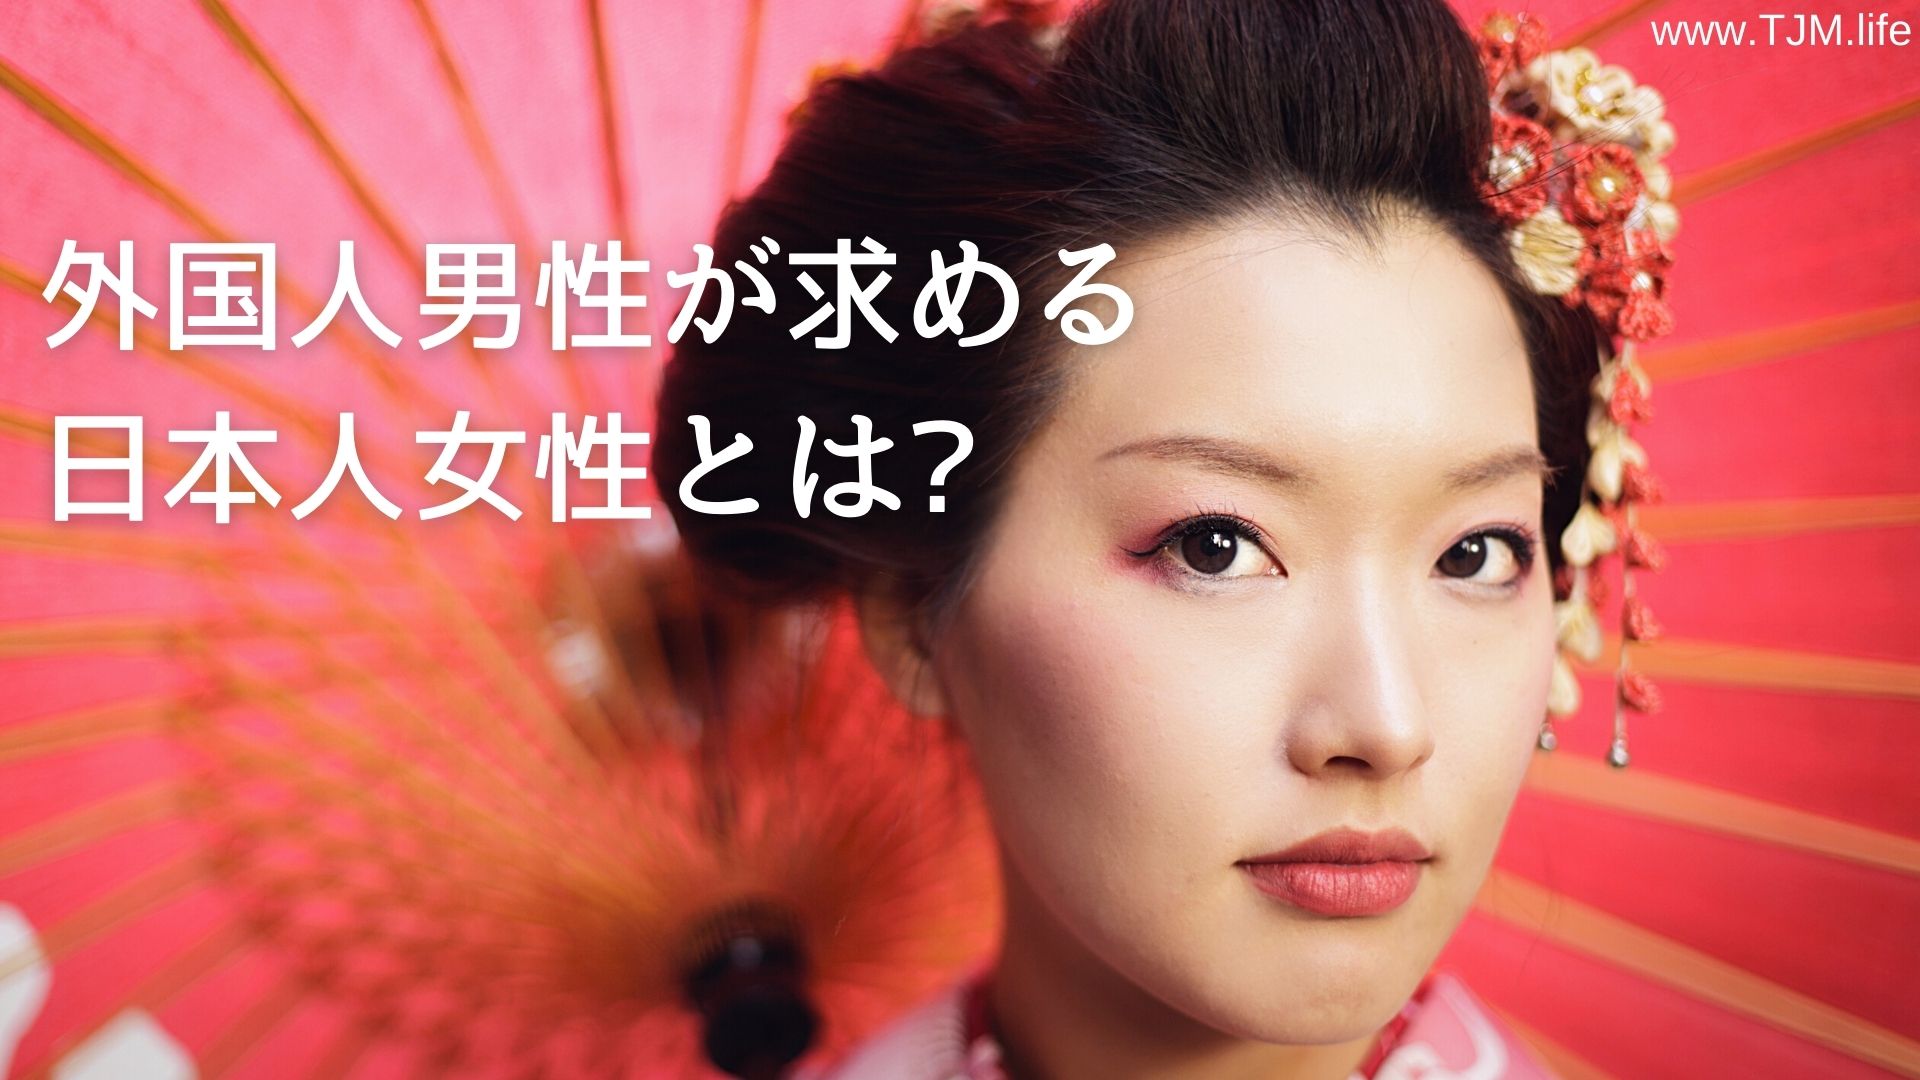 外国人男性が求める日本人女性とは 国際結婚and海外結婚相談所アメリカtjm 日本人のグローバル婚活をサポート